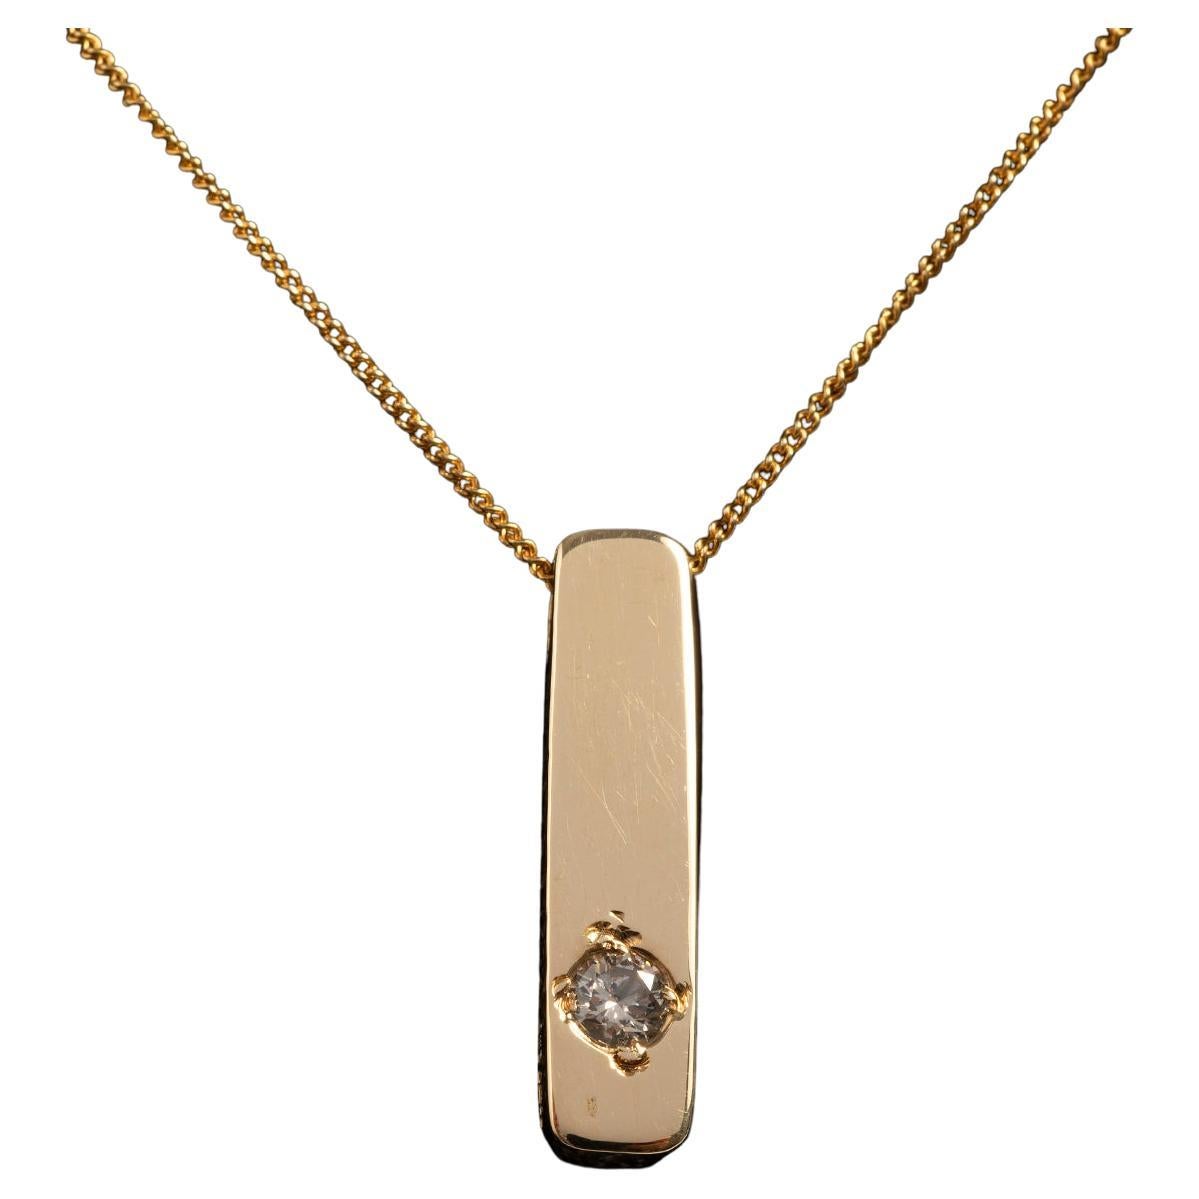 Pendentif et chaîne à barre de diamants, chaîne en or jaune 18 carats.